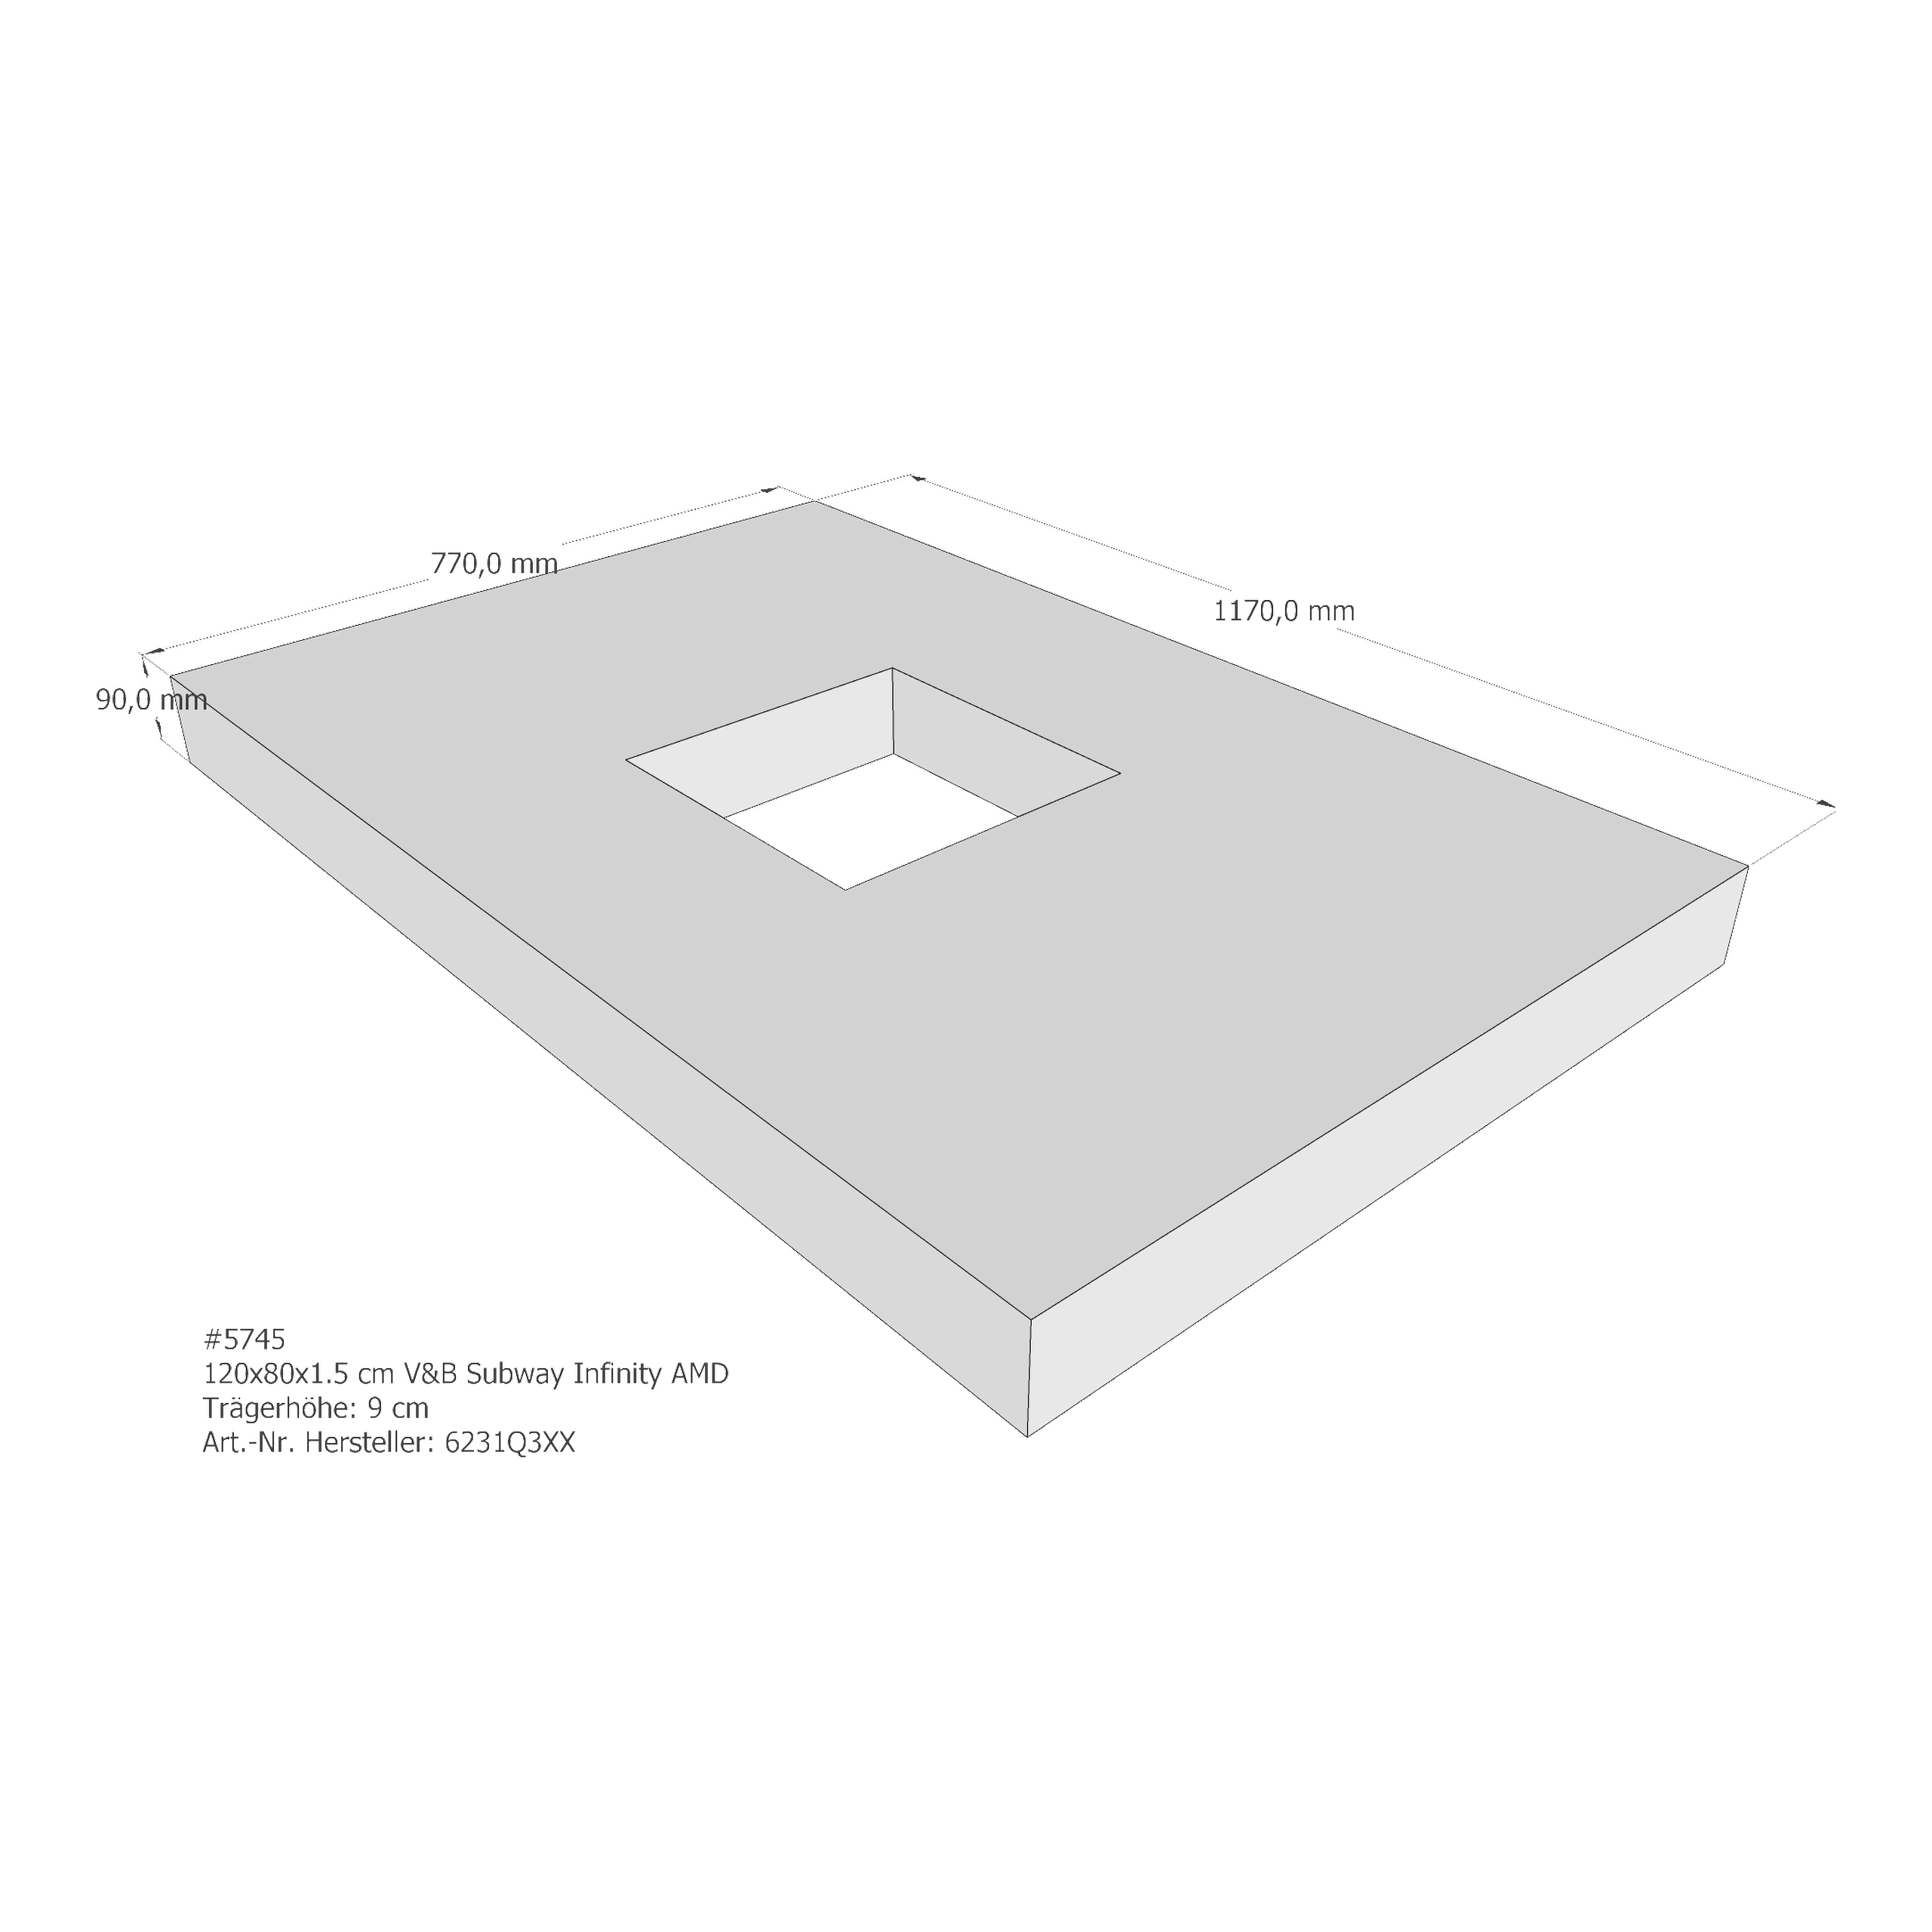 Duschwannenträger für Villeroy & Boch Subway Infinity 120 × 80 × 1,5 cm